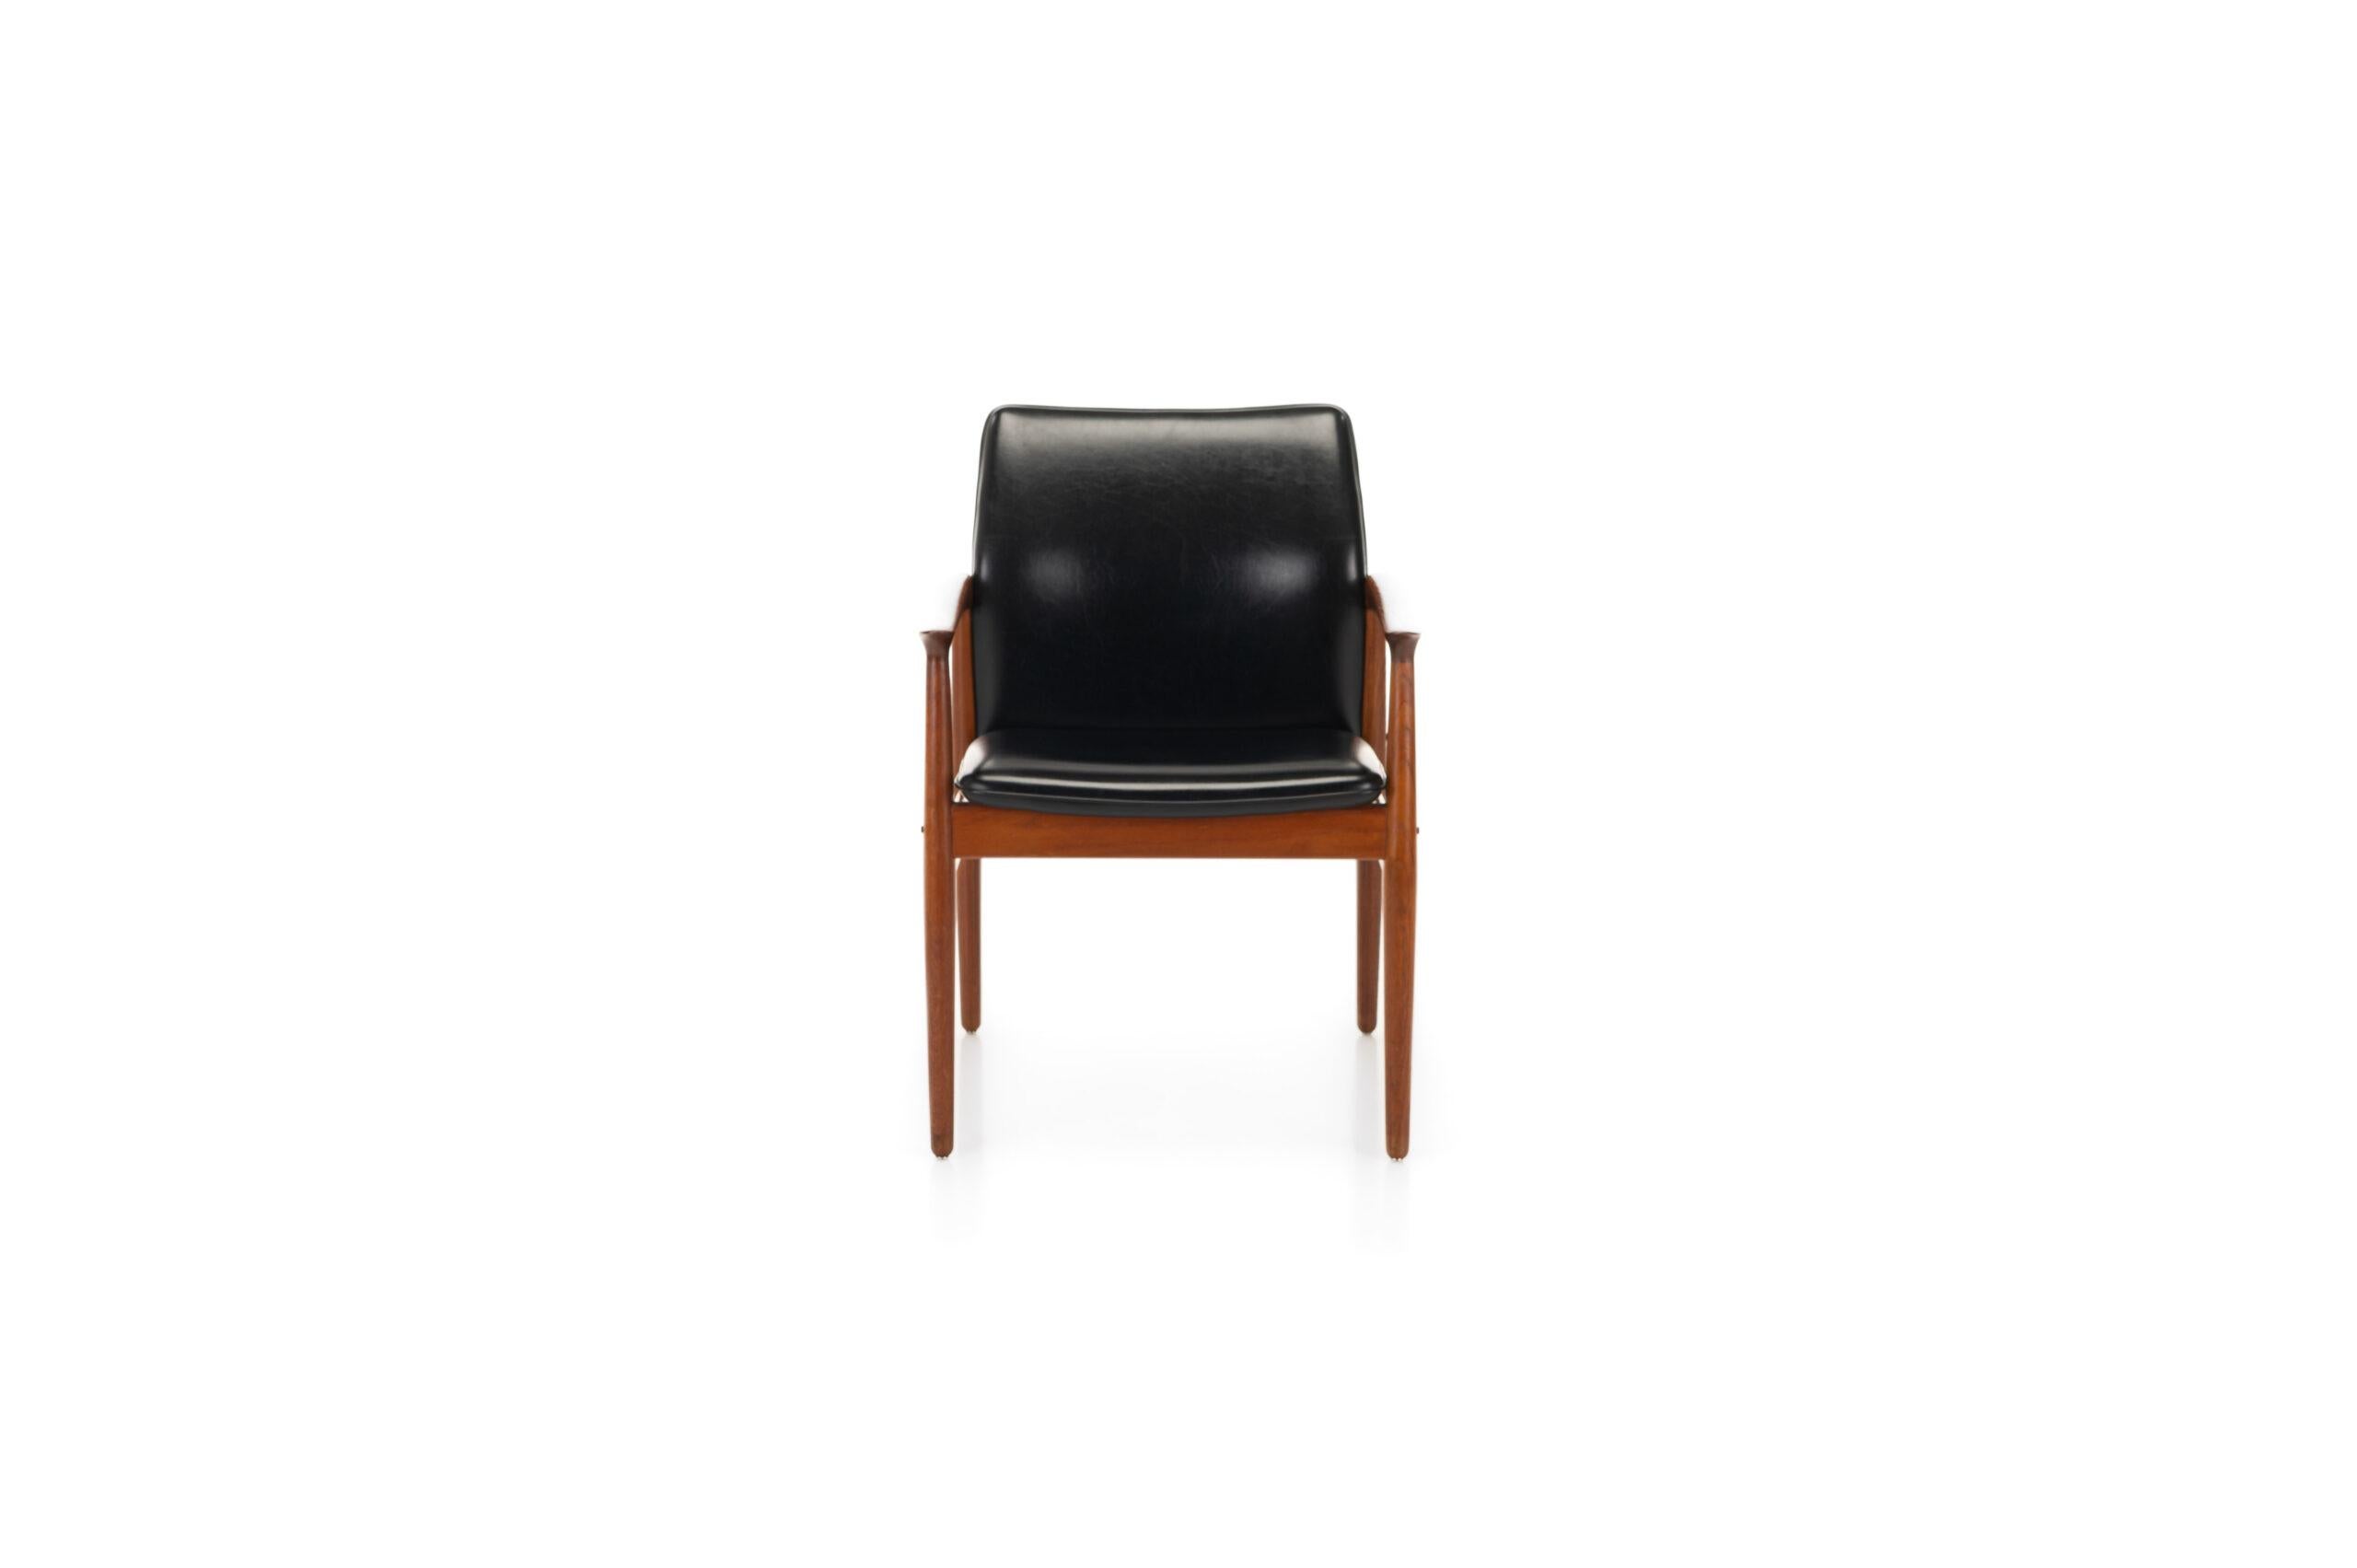 Fauteuil danois de Grete Jalk pour Glostrup, Danemark années 1960. La chaise a un cadre en teck, un revêtement en skaï noir et est en excellent état d'origine.